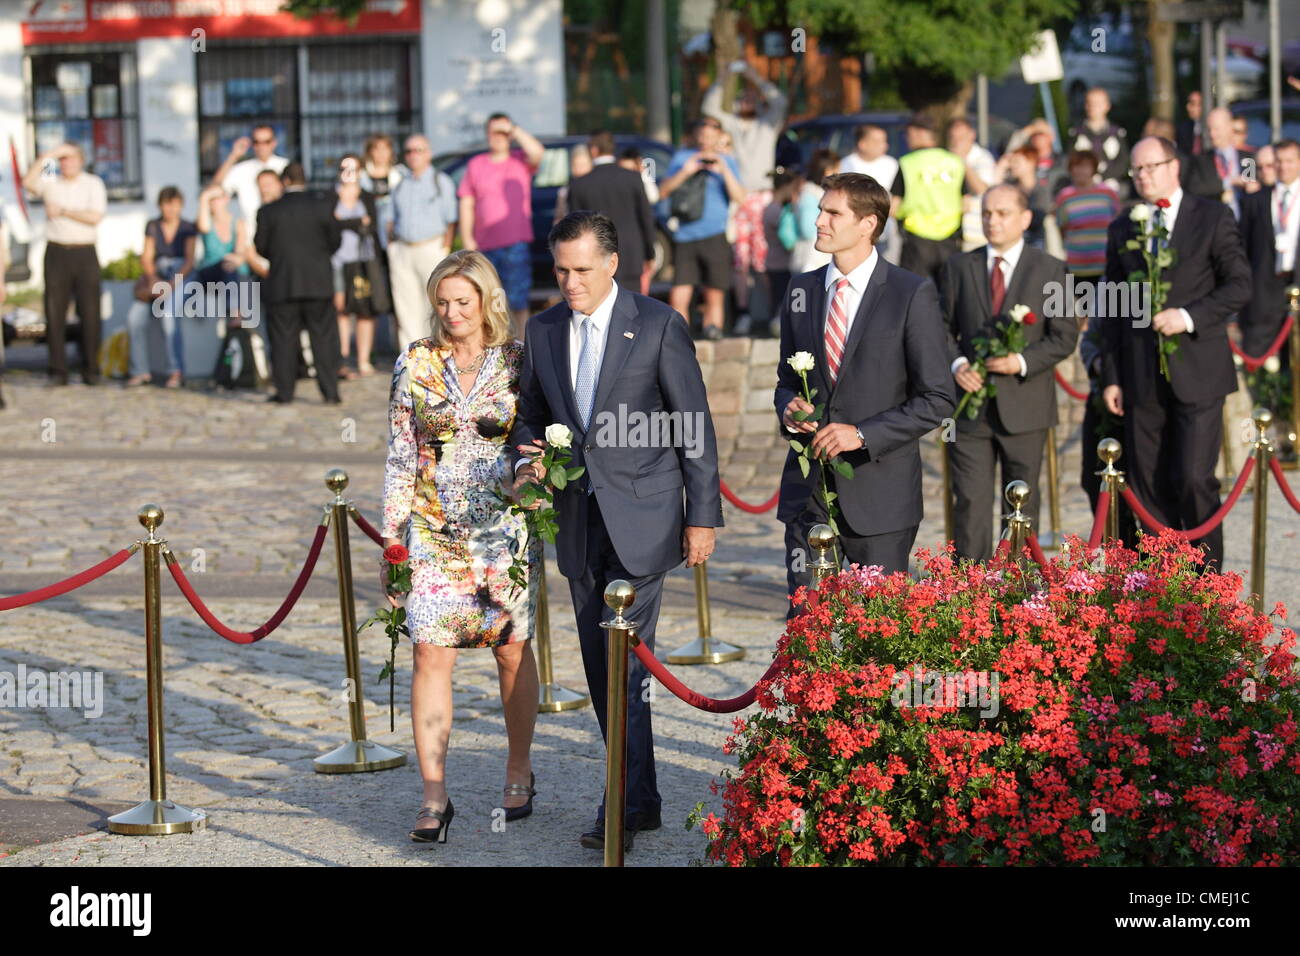 Gdansk, Pologne 30 avril, juillet 2012 USA Mitt Romney candidat présidentiel en Pologne. Mitt Romney avec sa femme a jeté des fleurs à l'Armée déchue ouvriers de chantier naval monument situé en face de l'historique chantier naval de Gdansk gate No 2. Banque D'Images